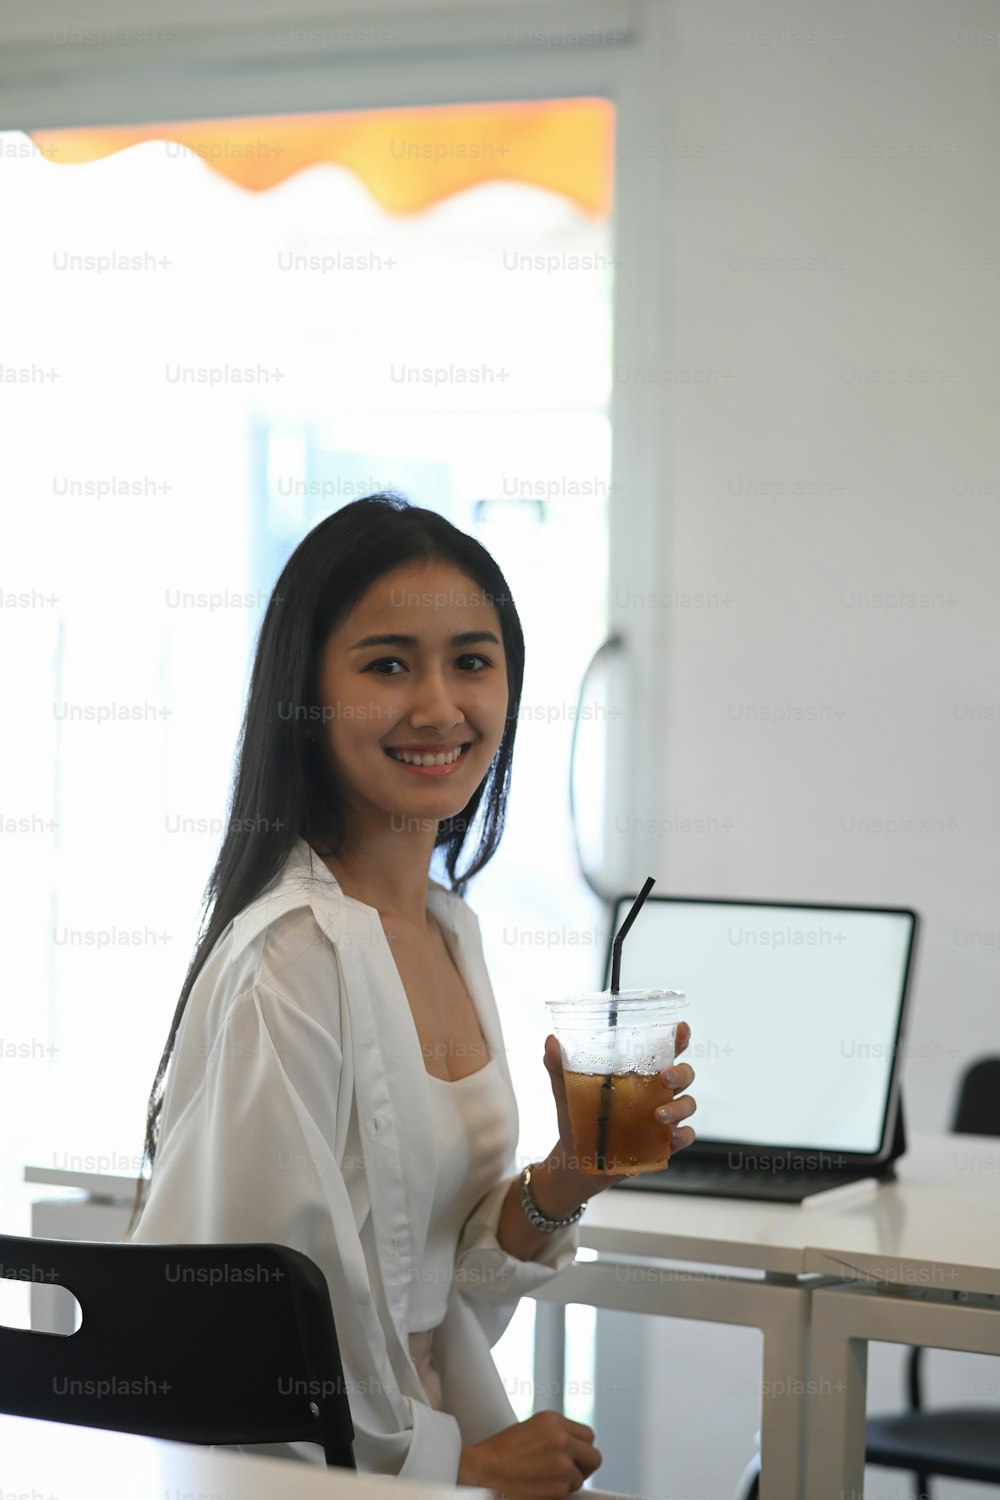 Ritratto di giovane donna che tiene in mano una tazza di caffè ghiacciato e sorride alla macchina fotografica mentre è seduta nel suo spazio di lavoro.